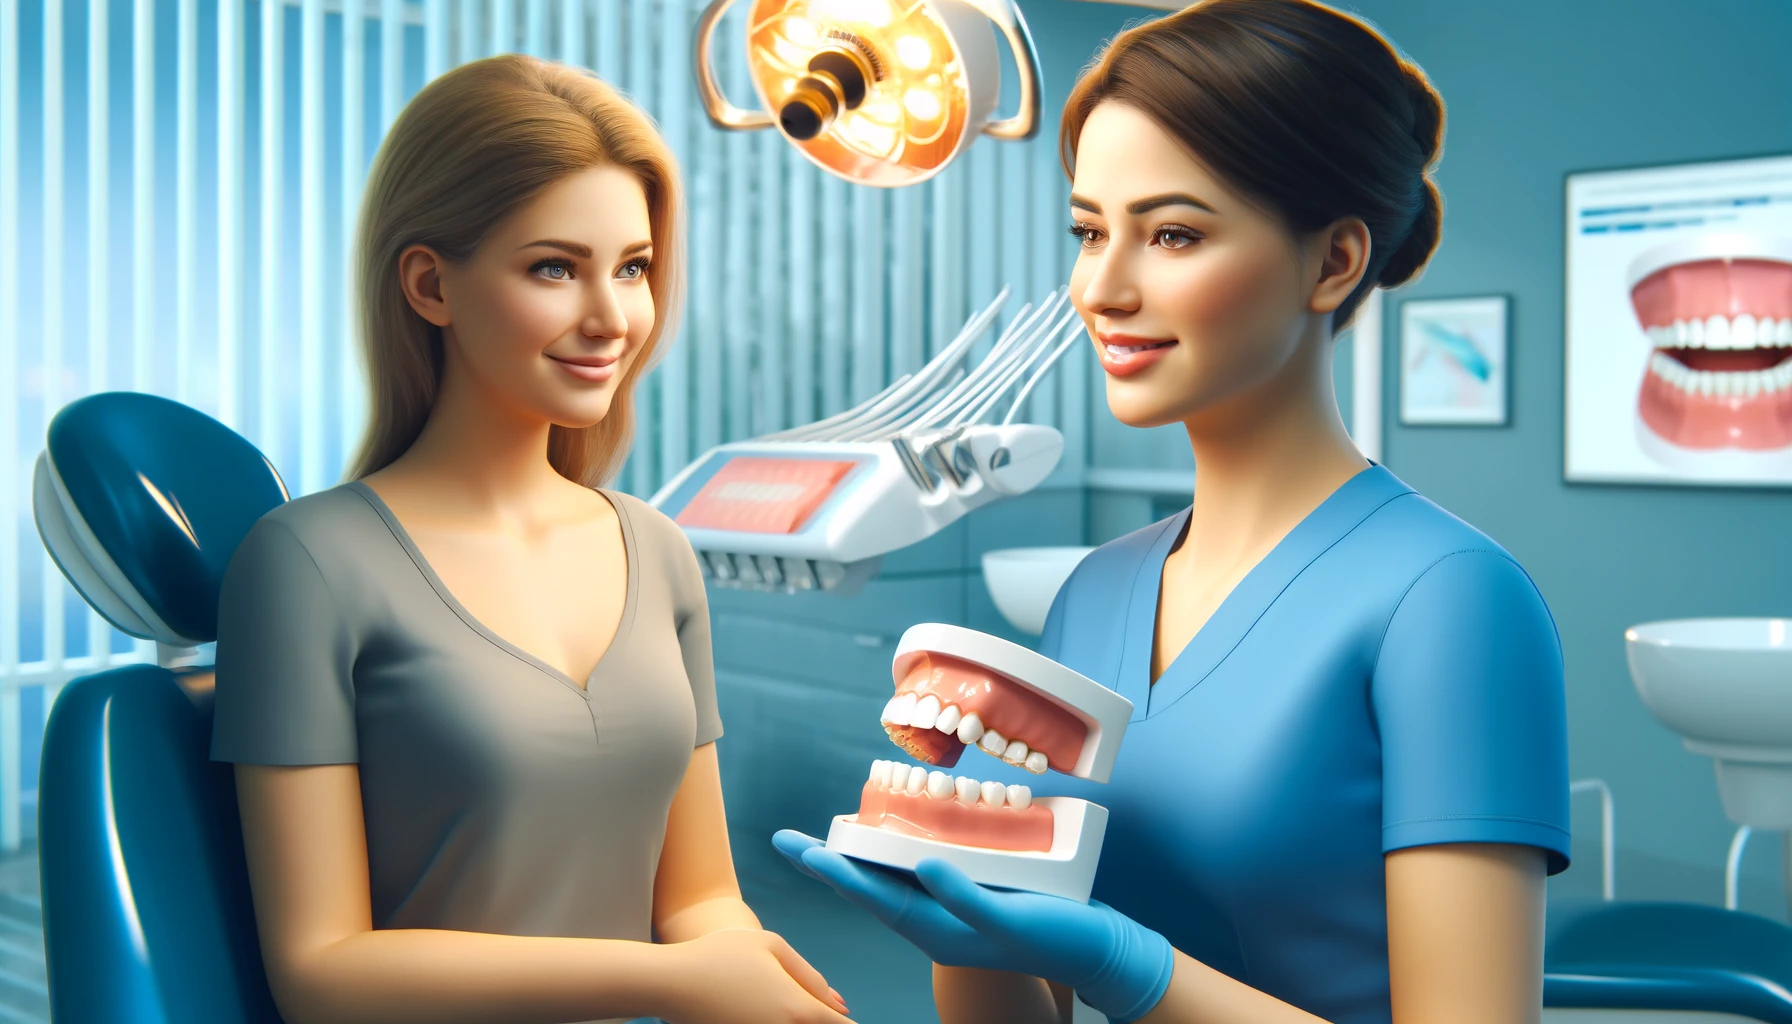 Pasient ser på tannprotese, diskuterer fordeler i klinikk